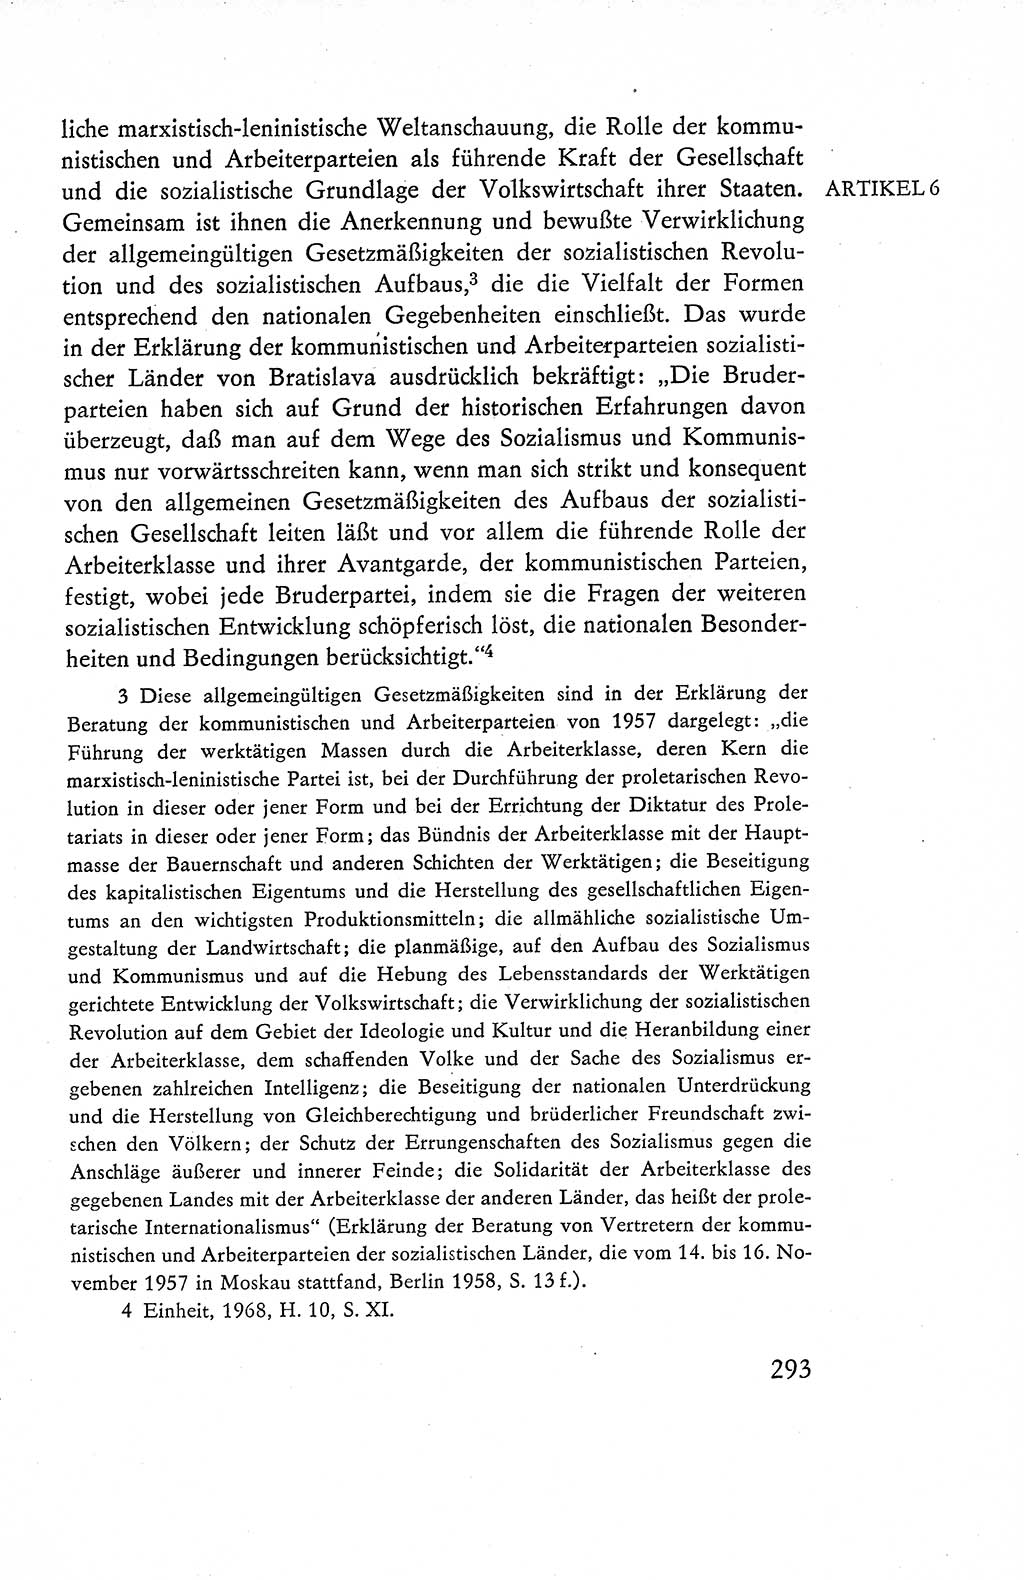 Verfassung der Deutschen Demokratischen Republik (DDR), Dokumente, Kommentar 1969, Band 1, Seite 293 (Verf. DDR Dok. Komm. 1969, Bd. 1, S. 293)